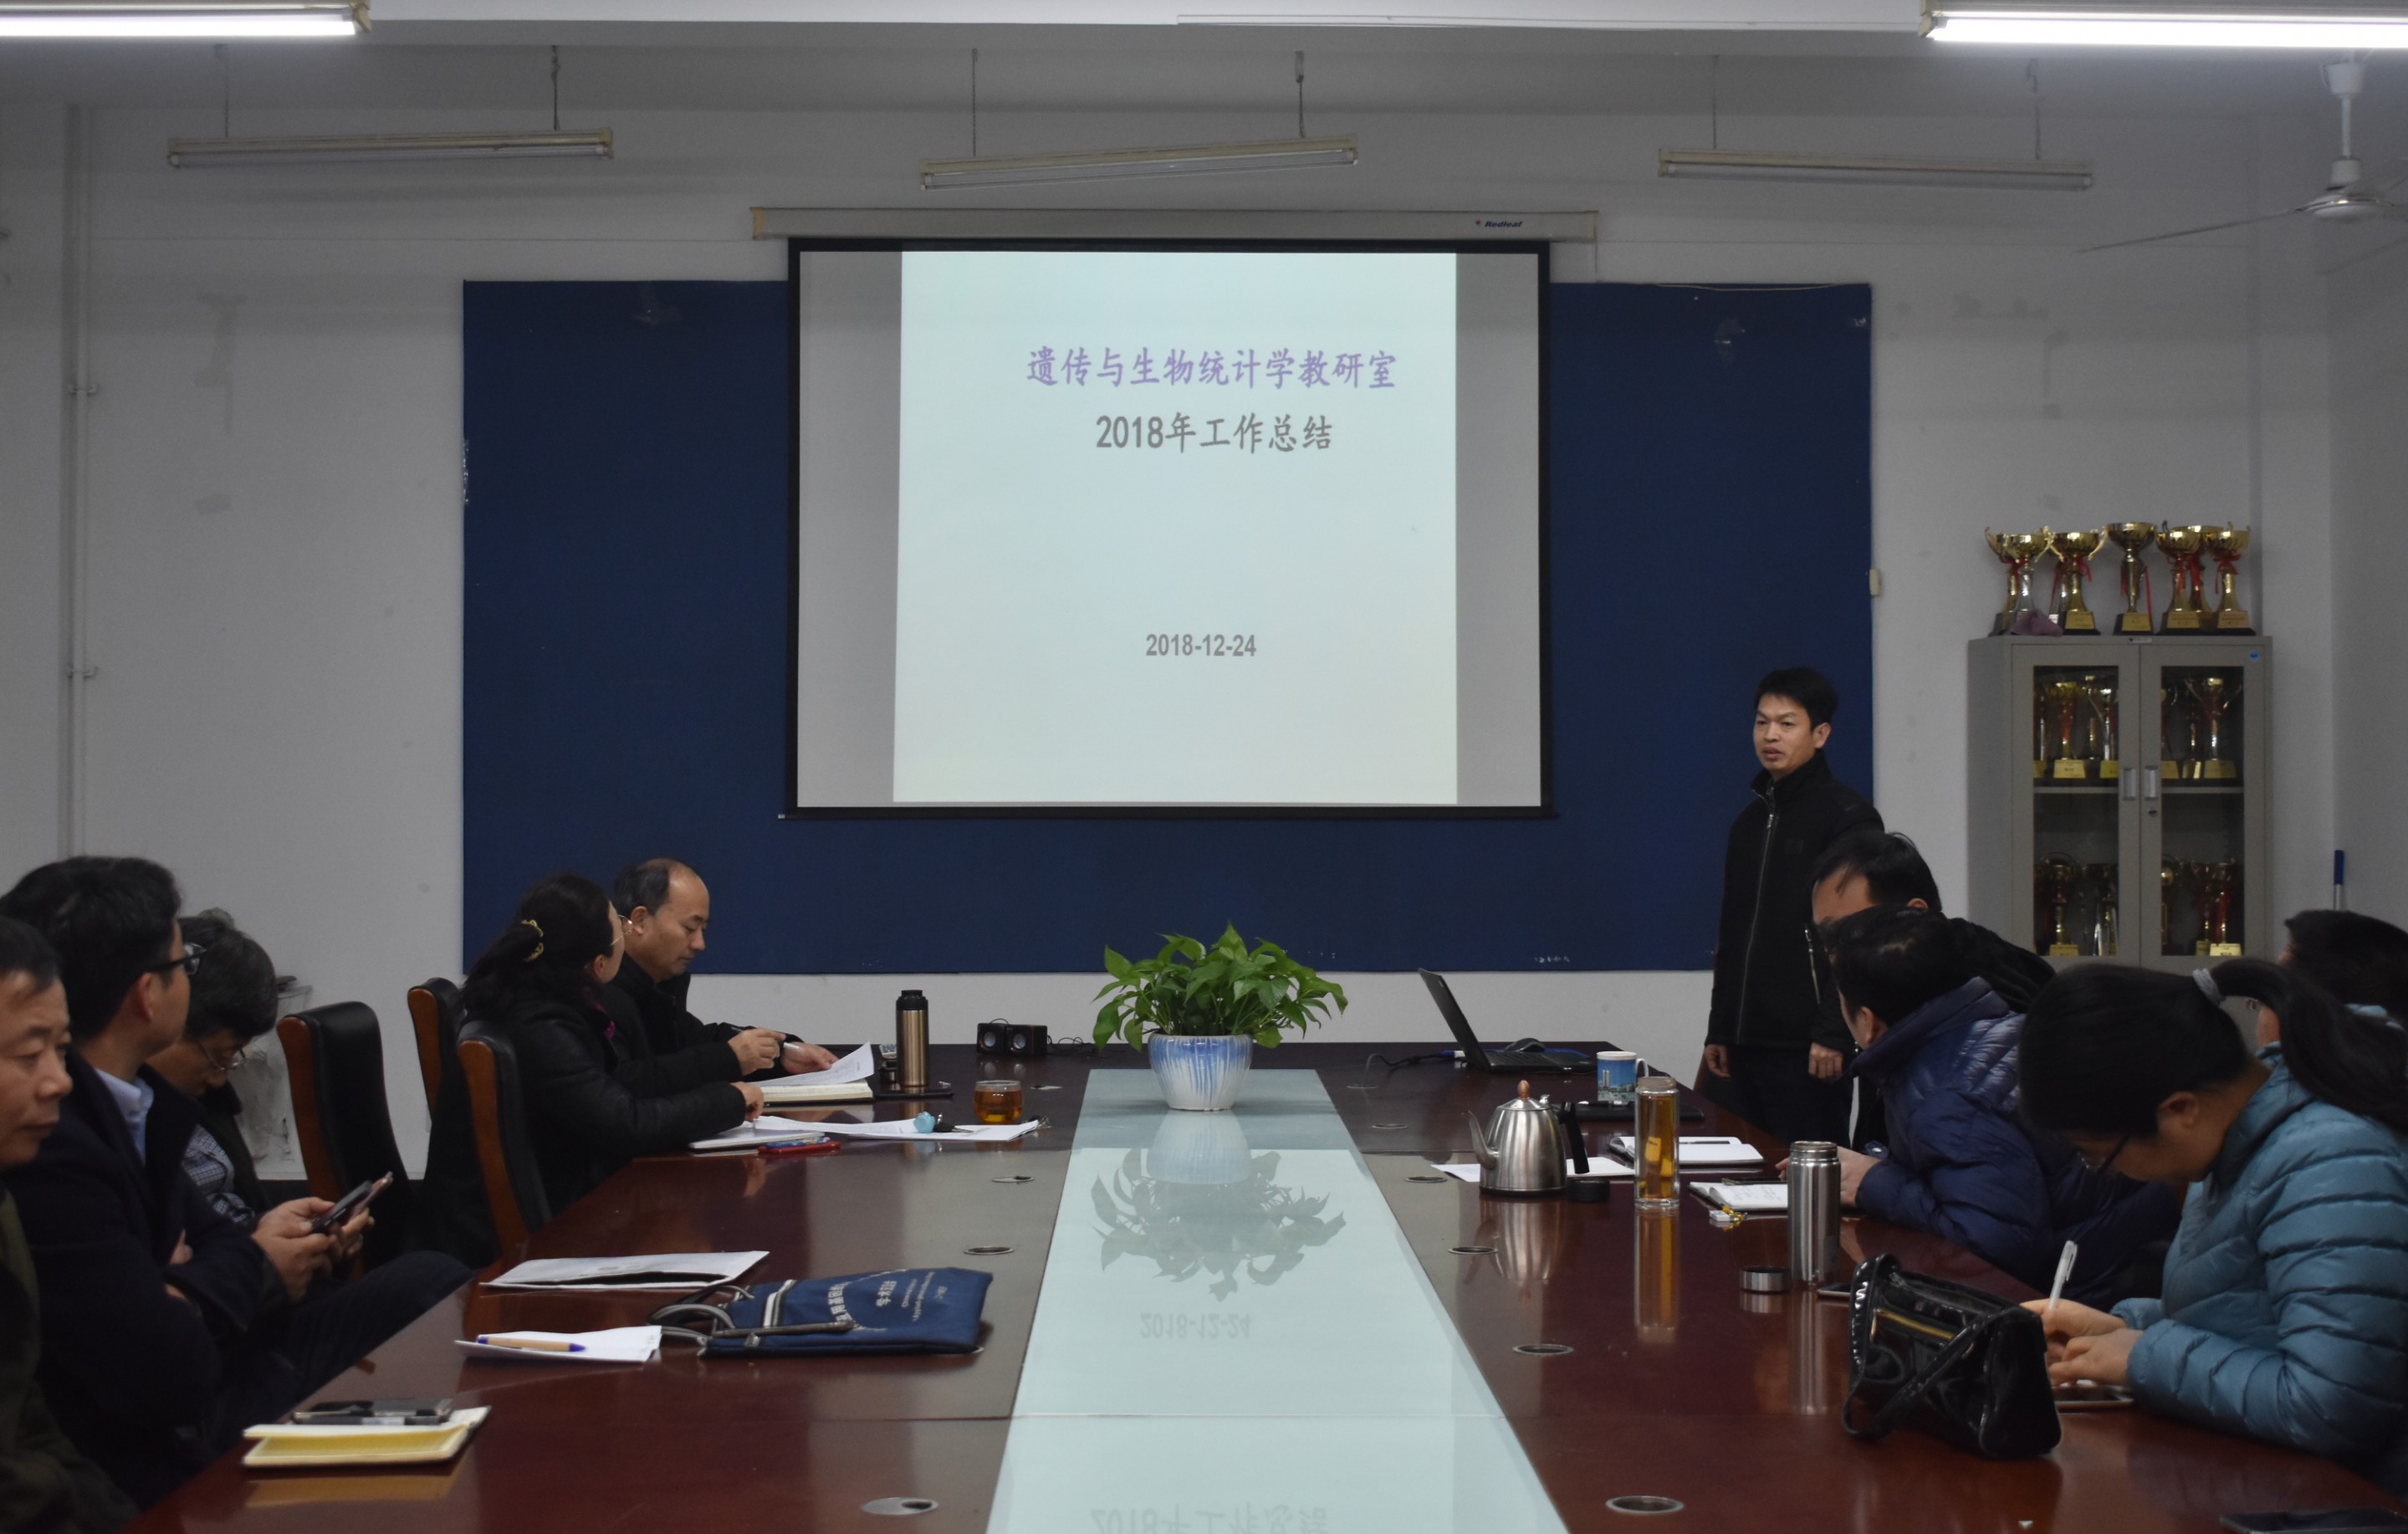 融创：与城市共发展，共建品质文化生活圈 住在杭州网 | 2022-02-21